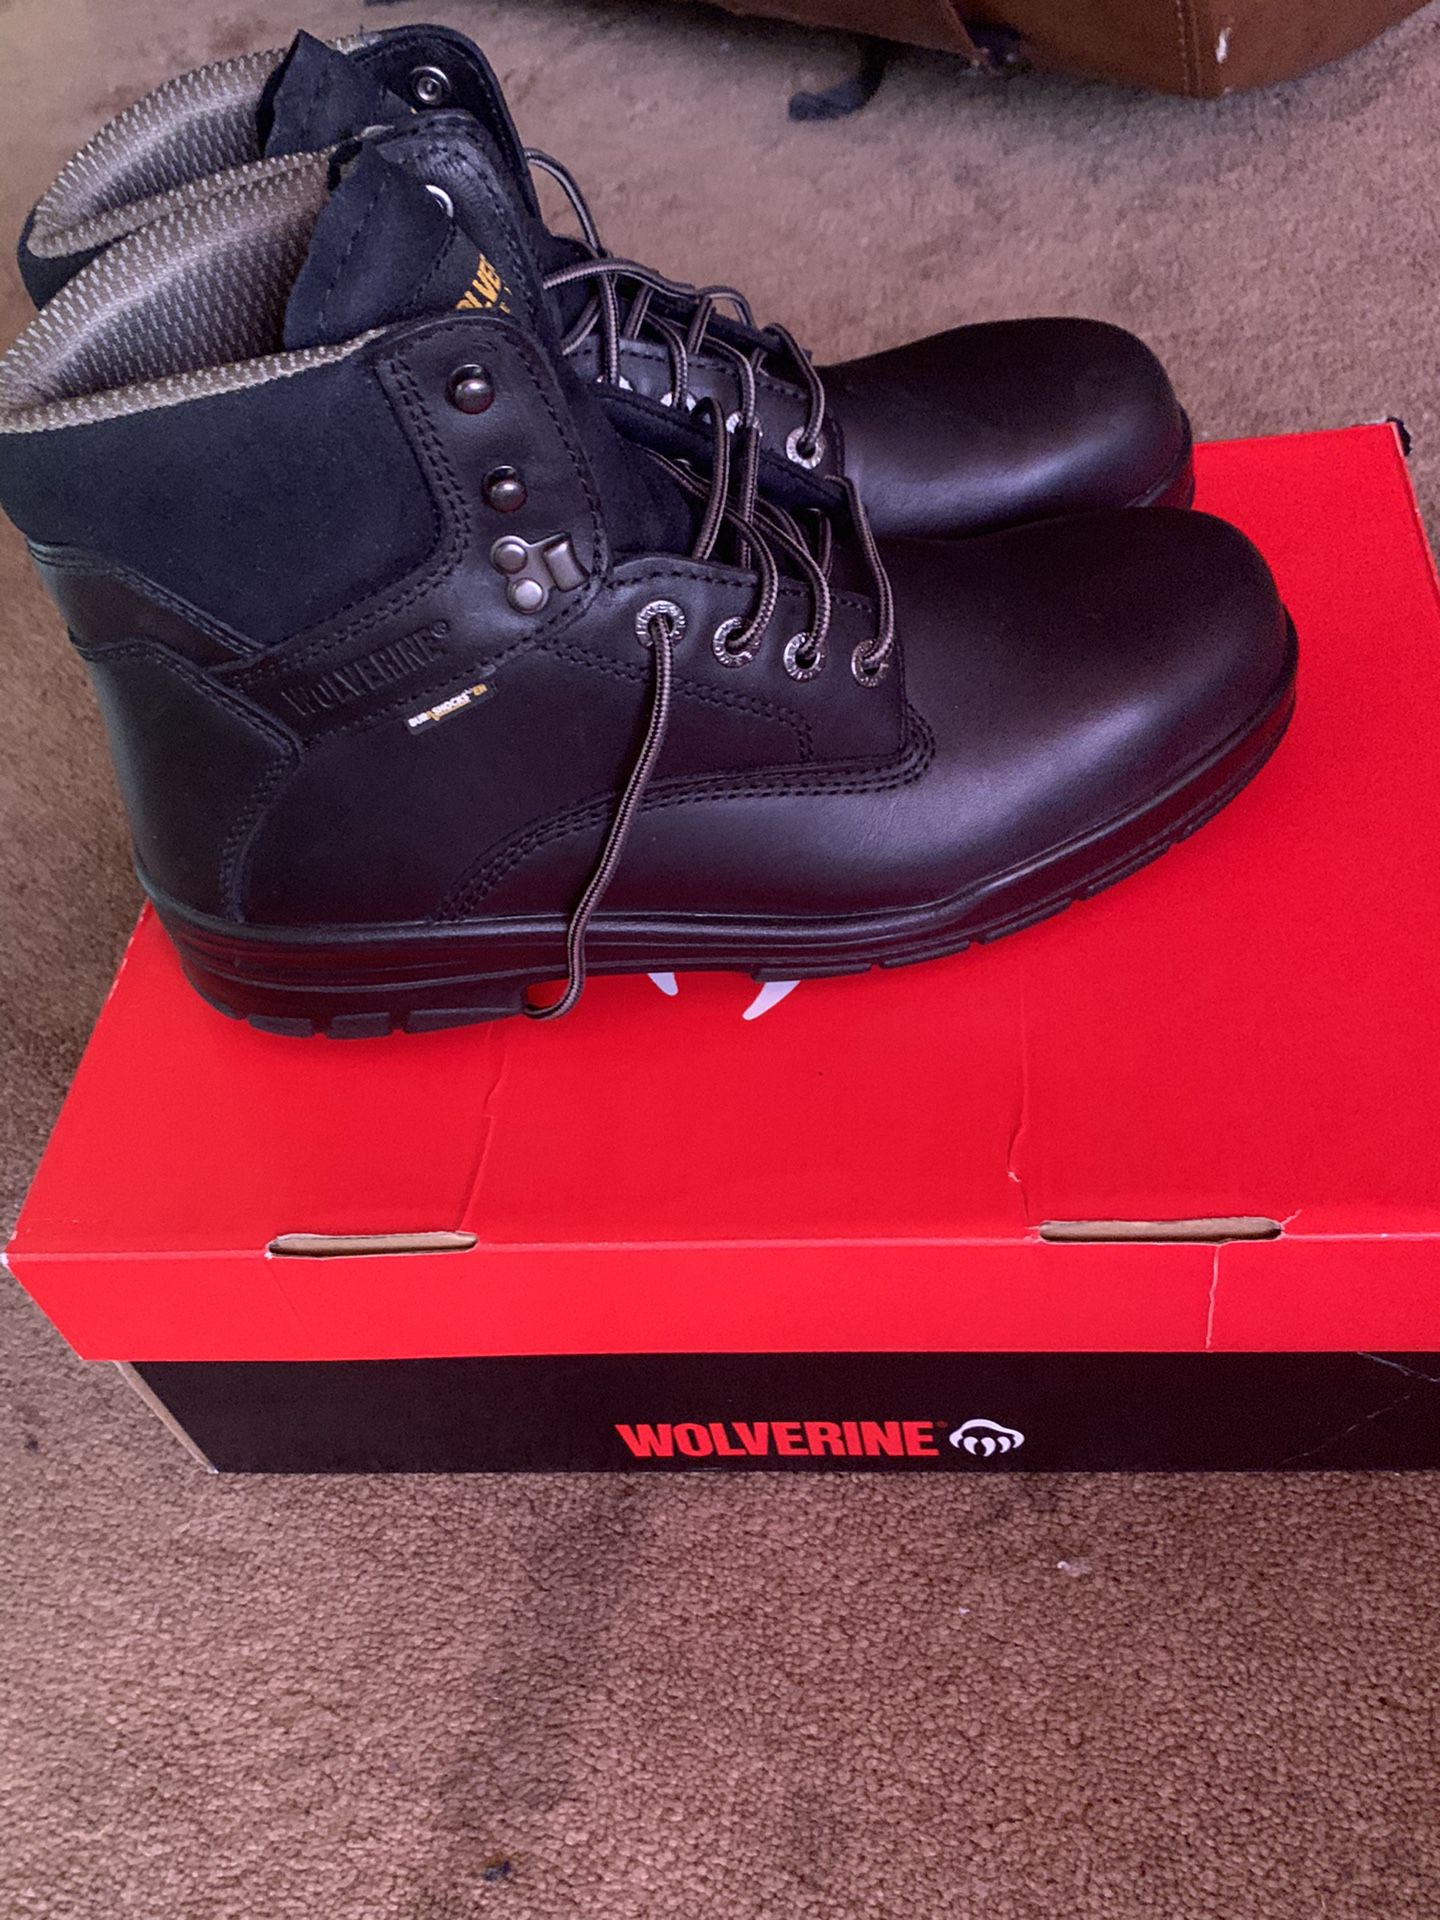 Wolverine Durashock Steel Toe Work Boot Size 10 1/2 Brand New!!!